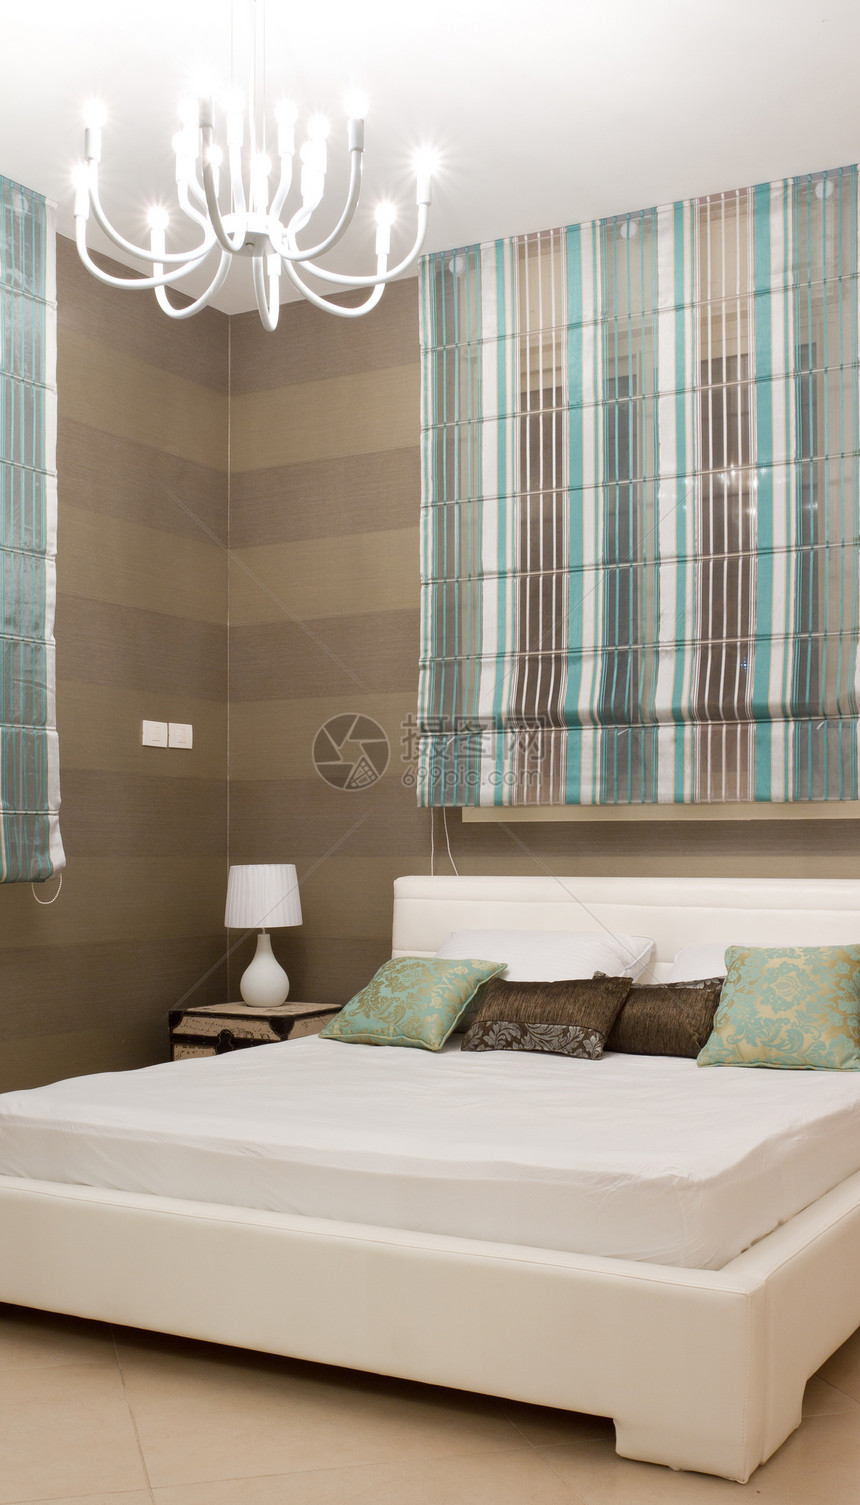 内部设计沙发房间装饰床单装潢旅馆卧室寝具生活假期图片